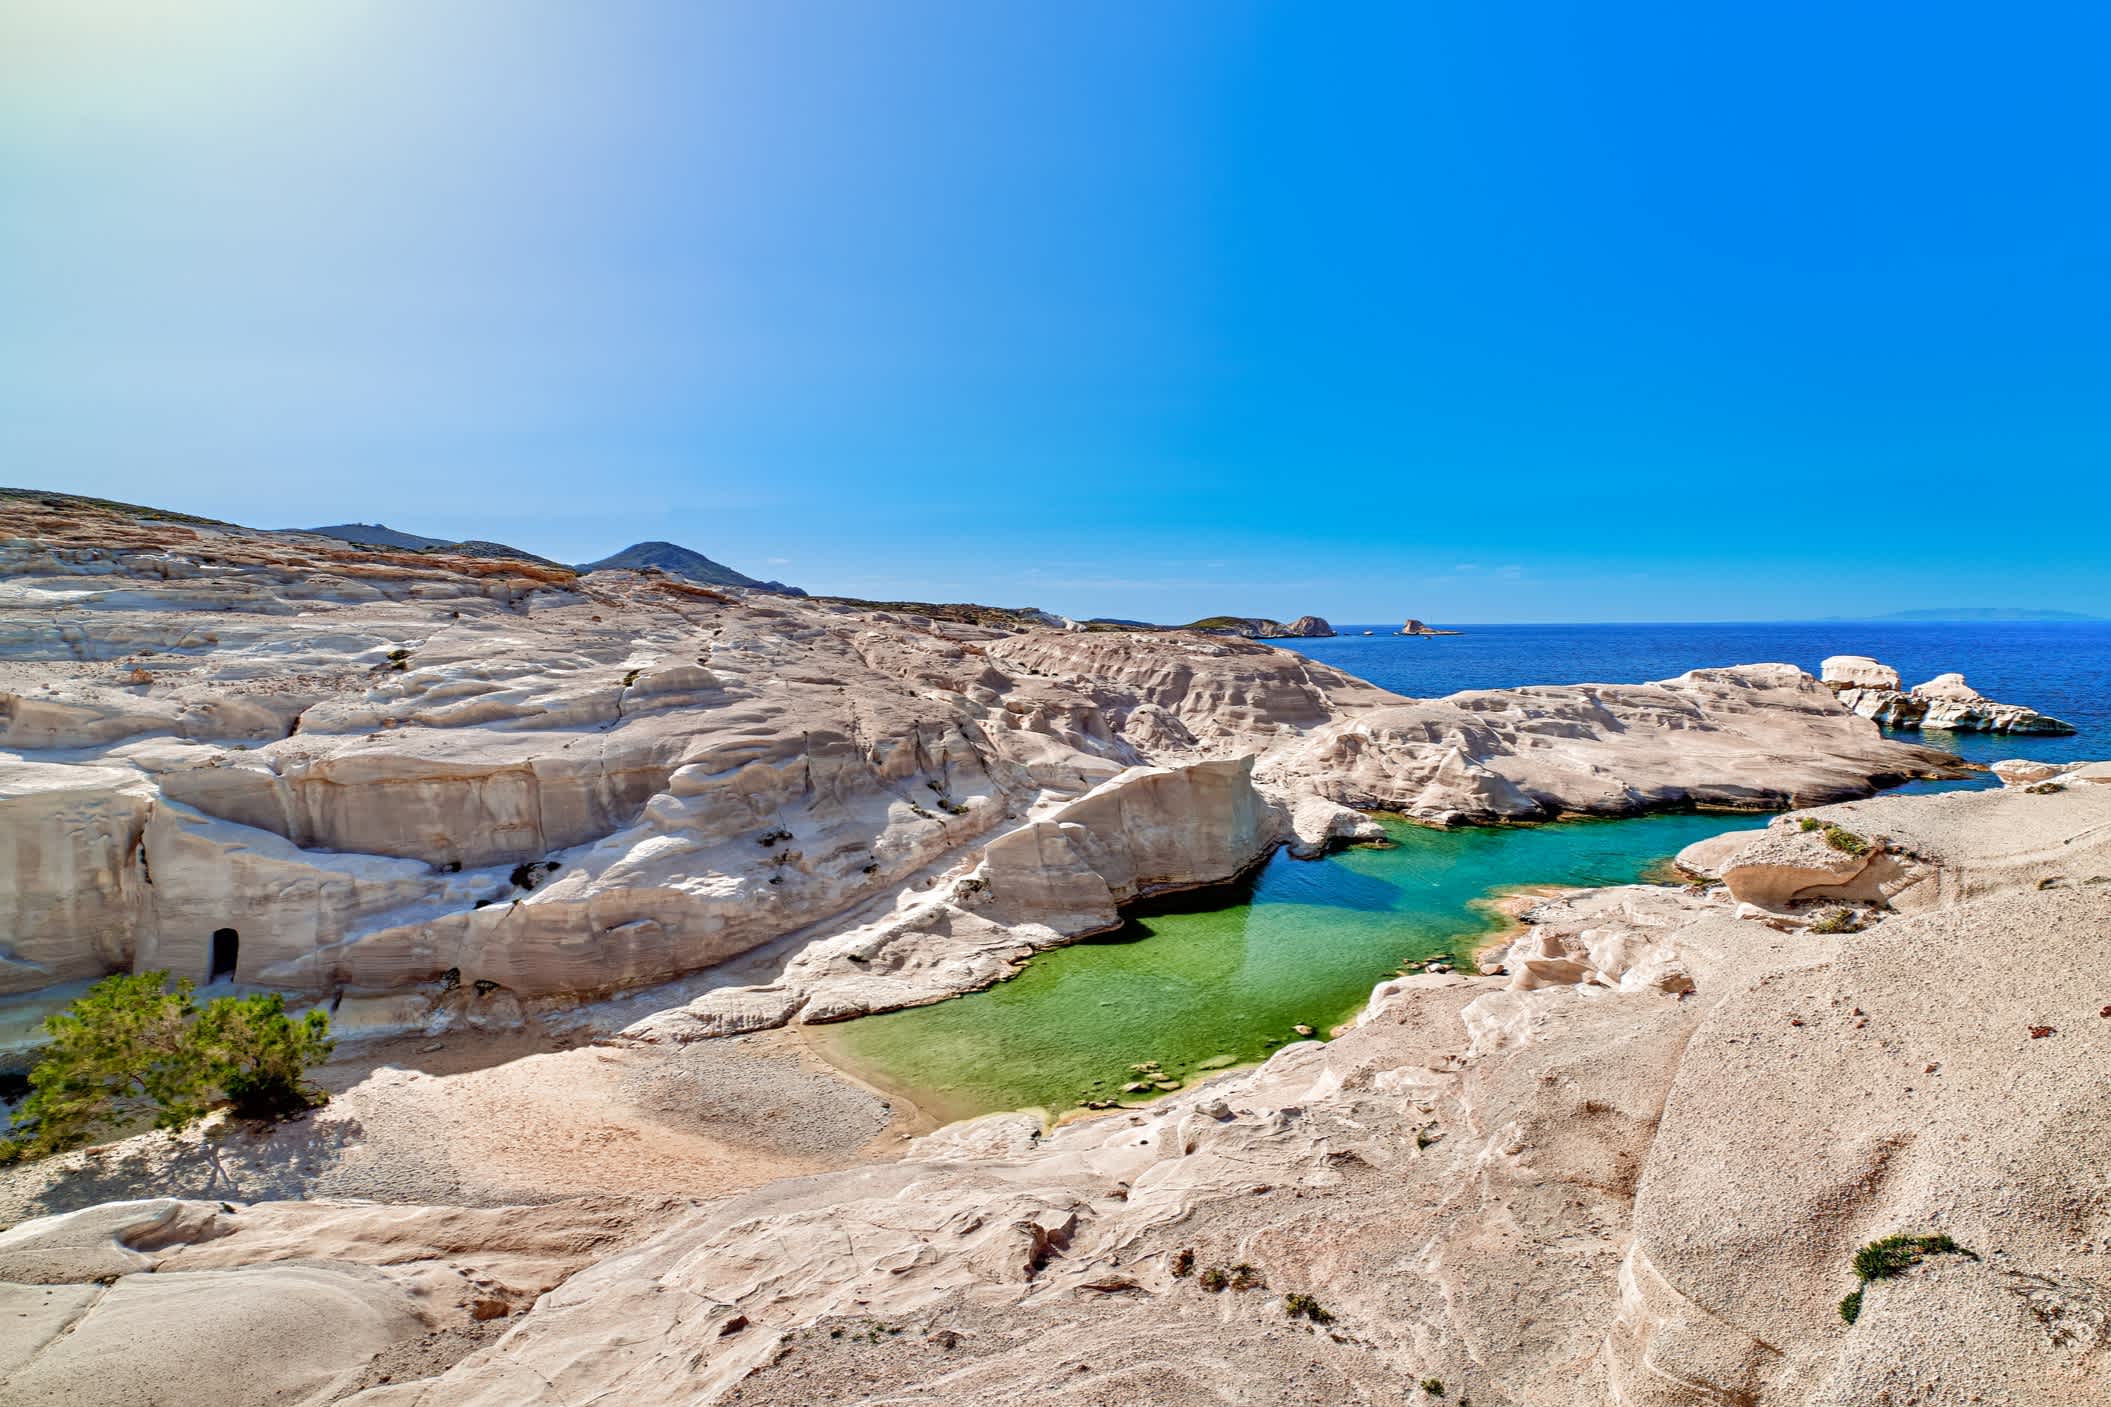 Schöne Landschaft mit weißen Felsen am Strand von Sarakiniko, Ägäis, Insel Milos, Griechenland. Leere Klippen, Sommersonne, klares Meerwasser, azurblaue Lagune